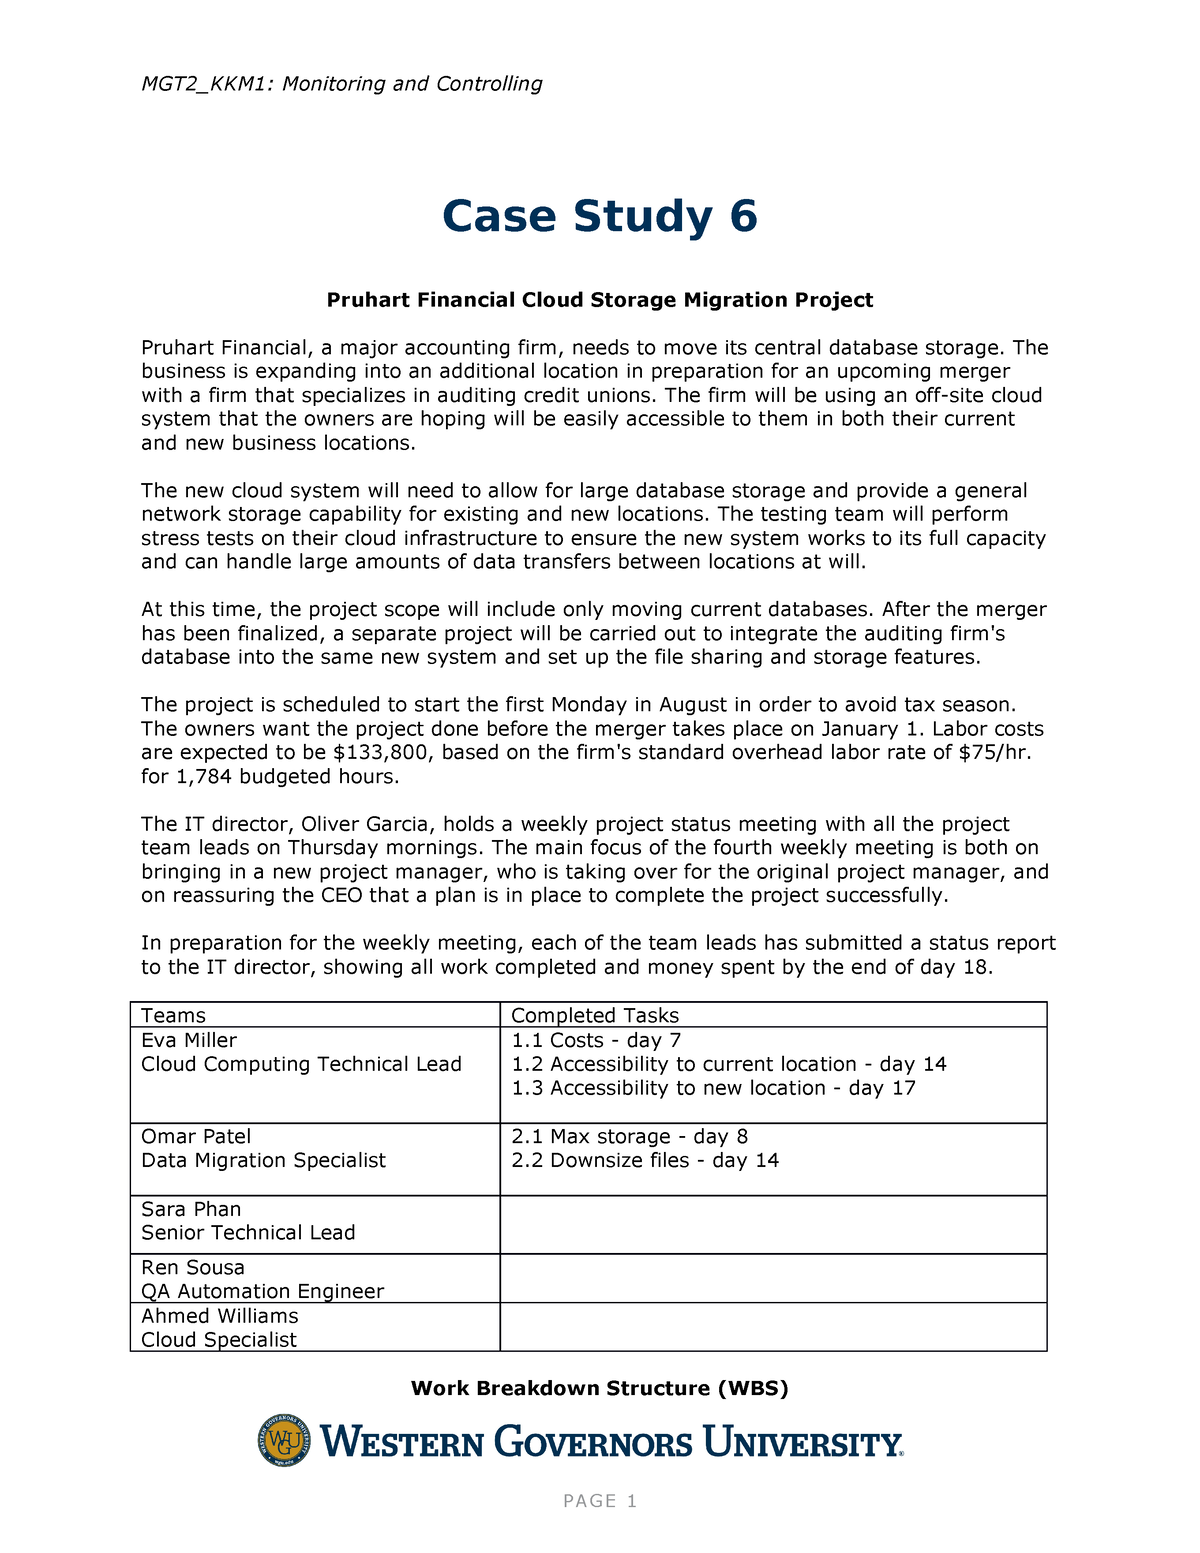 3.4.5 case study 6